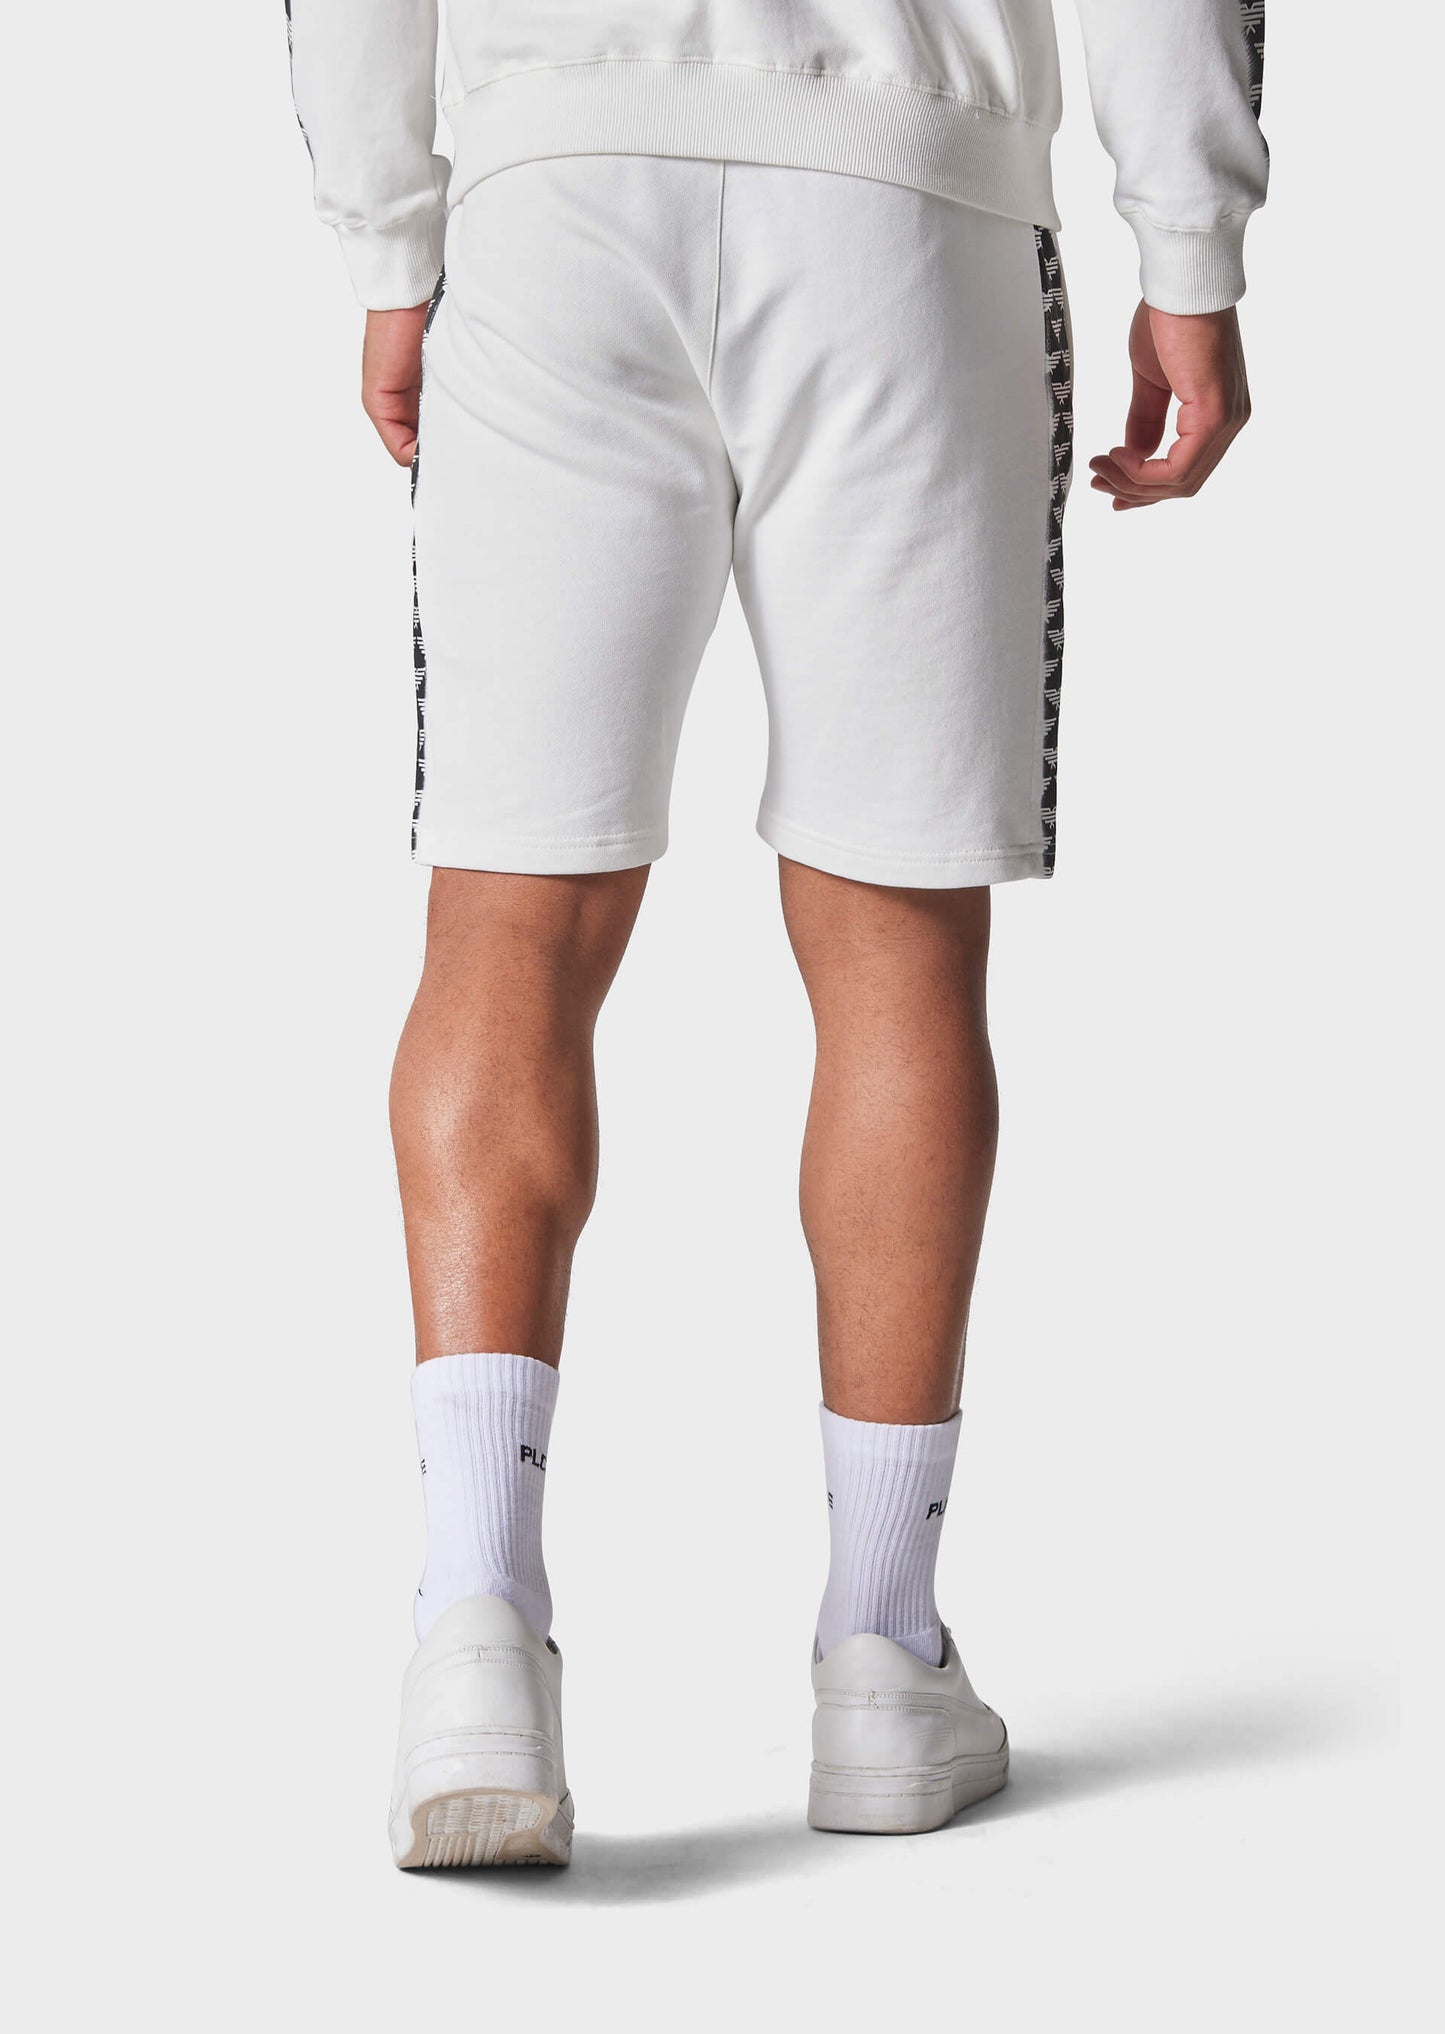 Rener Bone White Jog Shorts